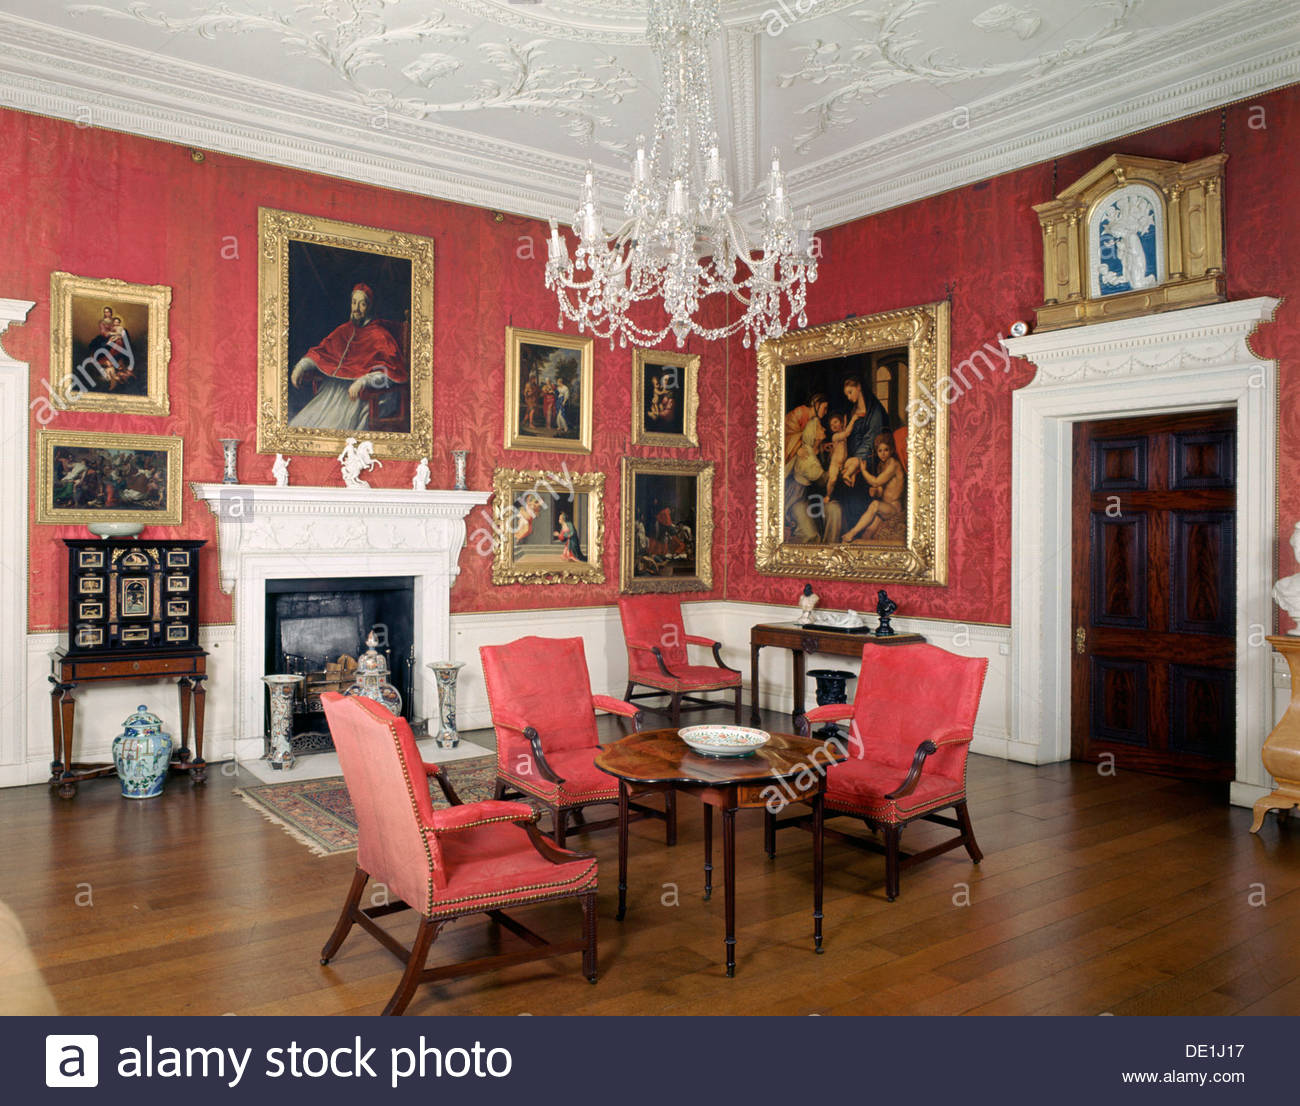 Interior, Corsham Court, Wiltshire. Artist: J Litten Stock Photo ...